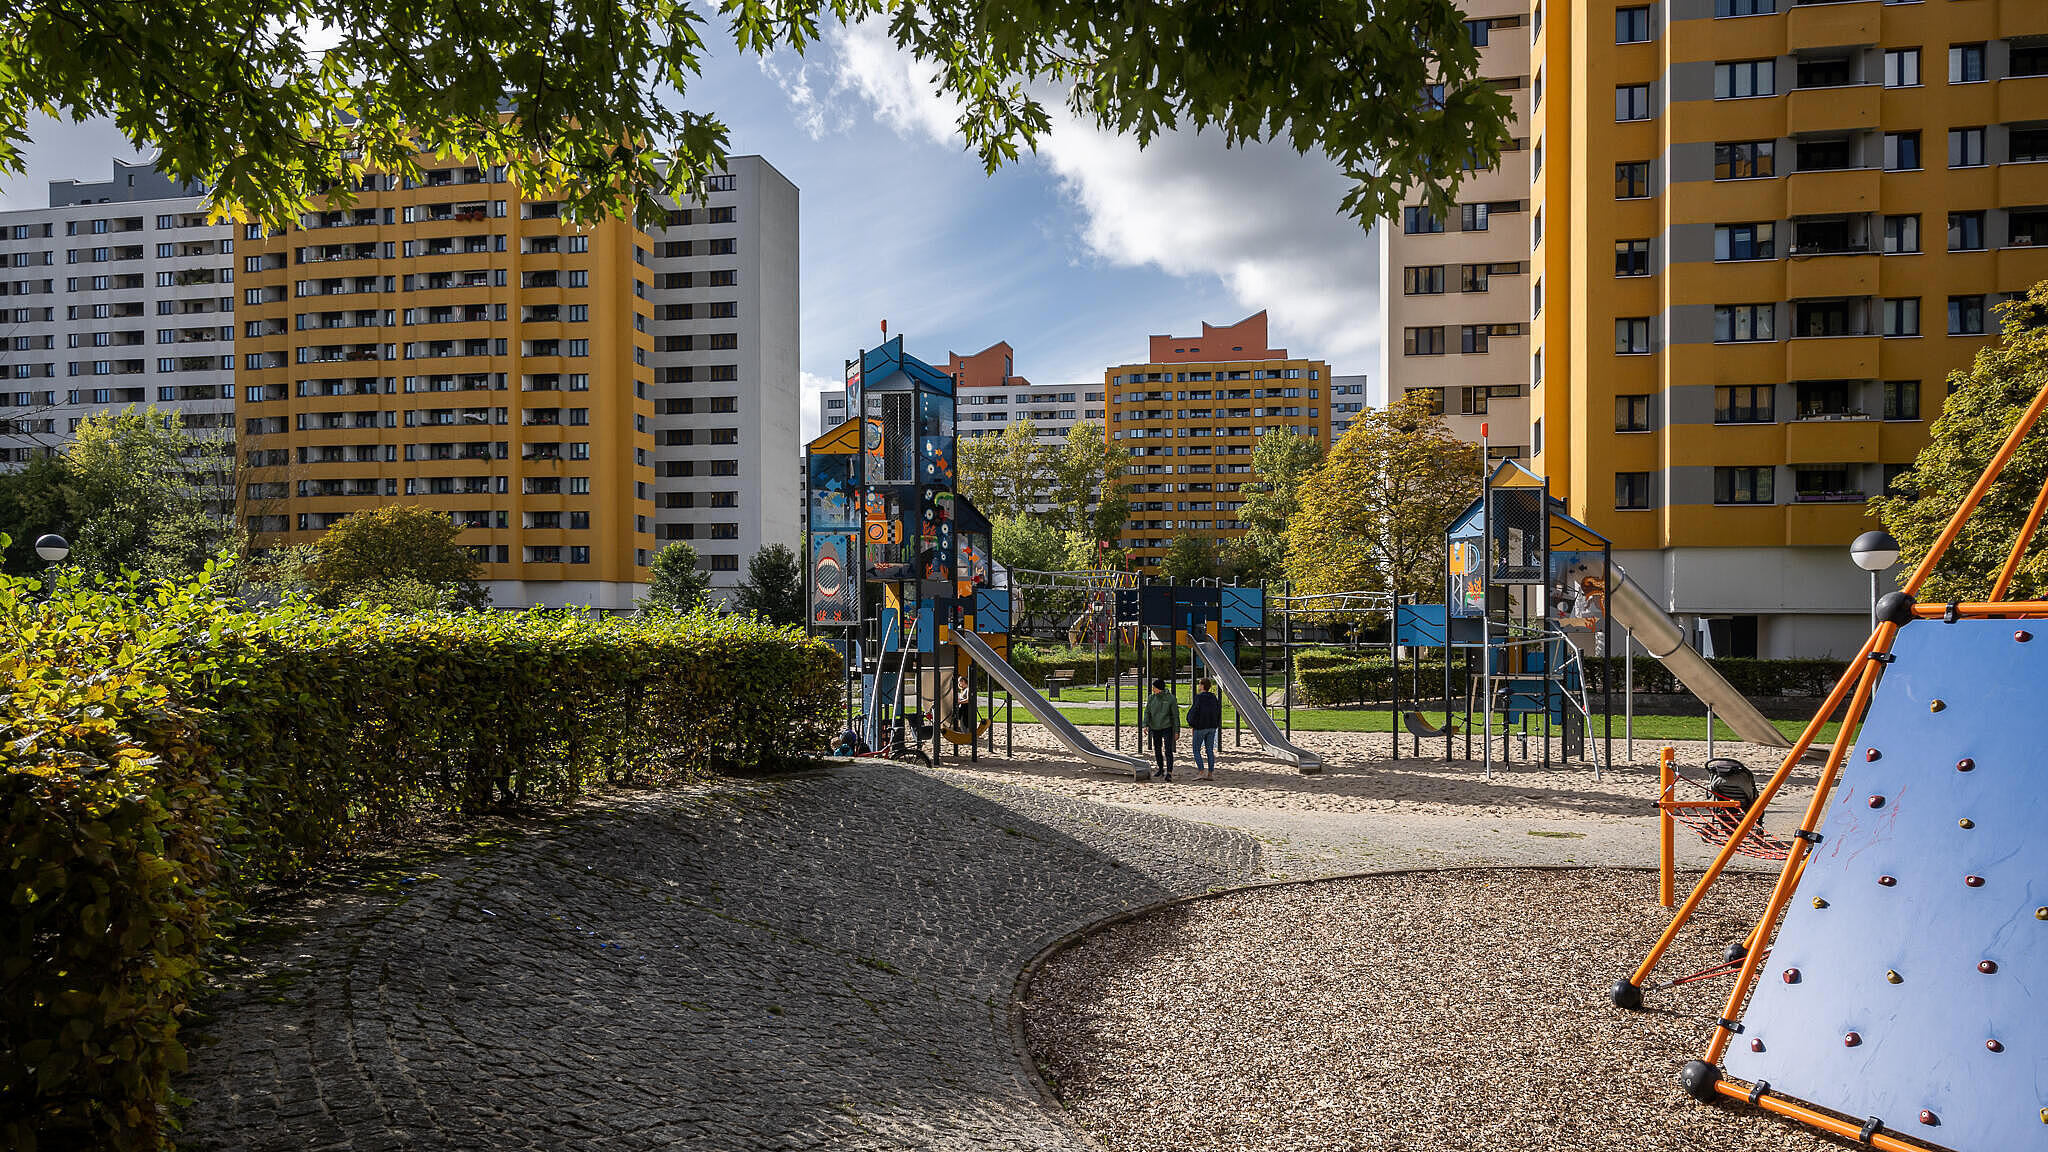 Bild zeigt neugestaltete Grünanlagen im Märkischen Viertel, mittig Spielplatz zum Klettern und rutschen. Im Hintergrund Wohnhäuser.